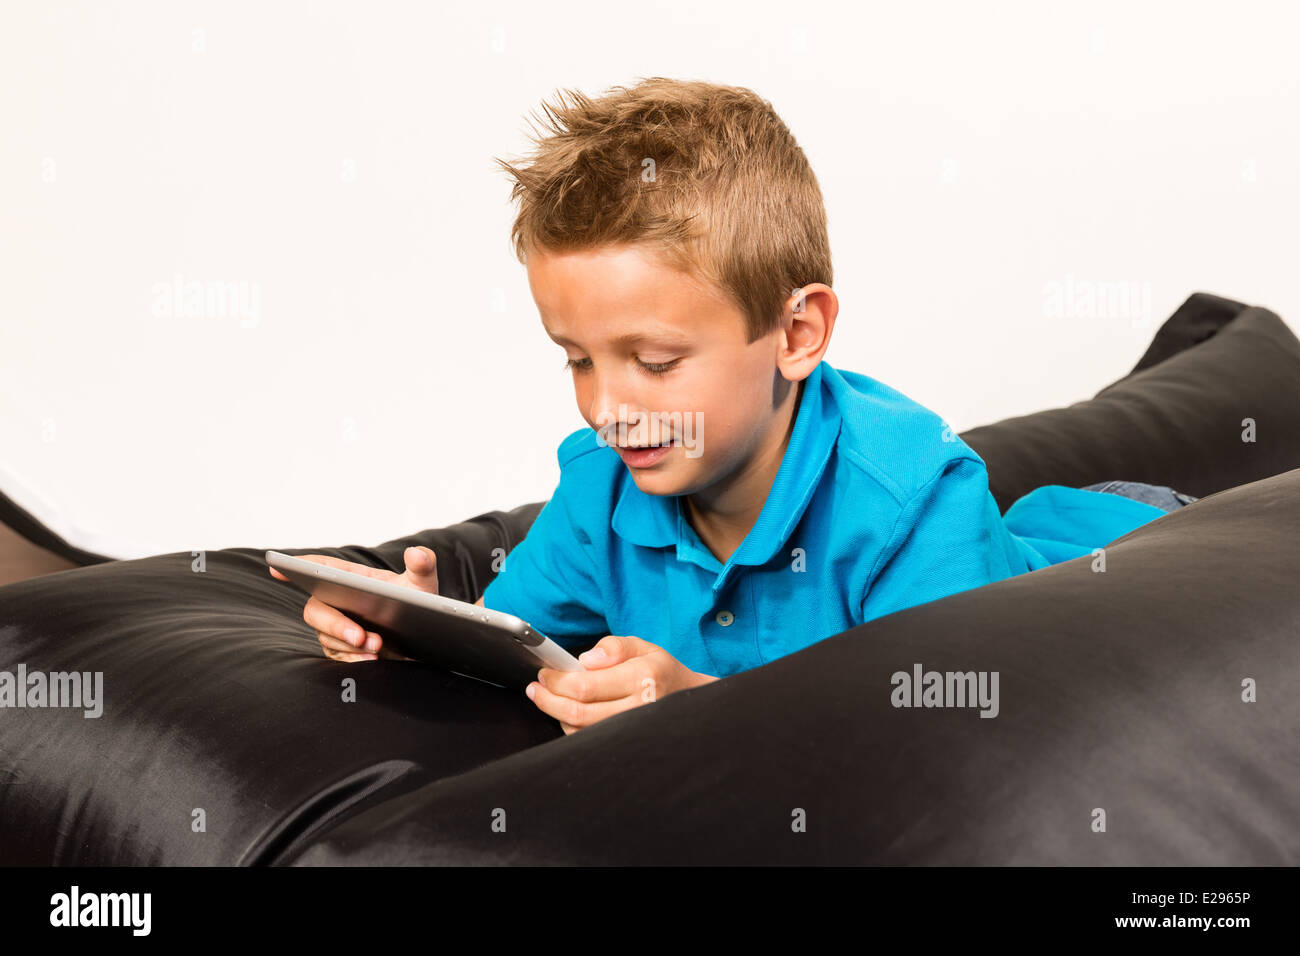 Junge liegend auf Sitzsack mit seinem Tablet. Studio auf weißem Hintergrund gedreht. Stockfoto